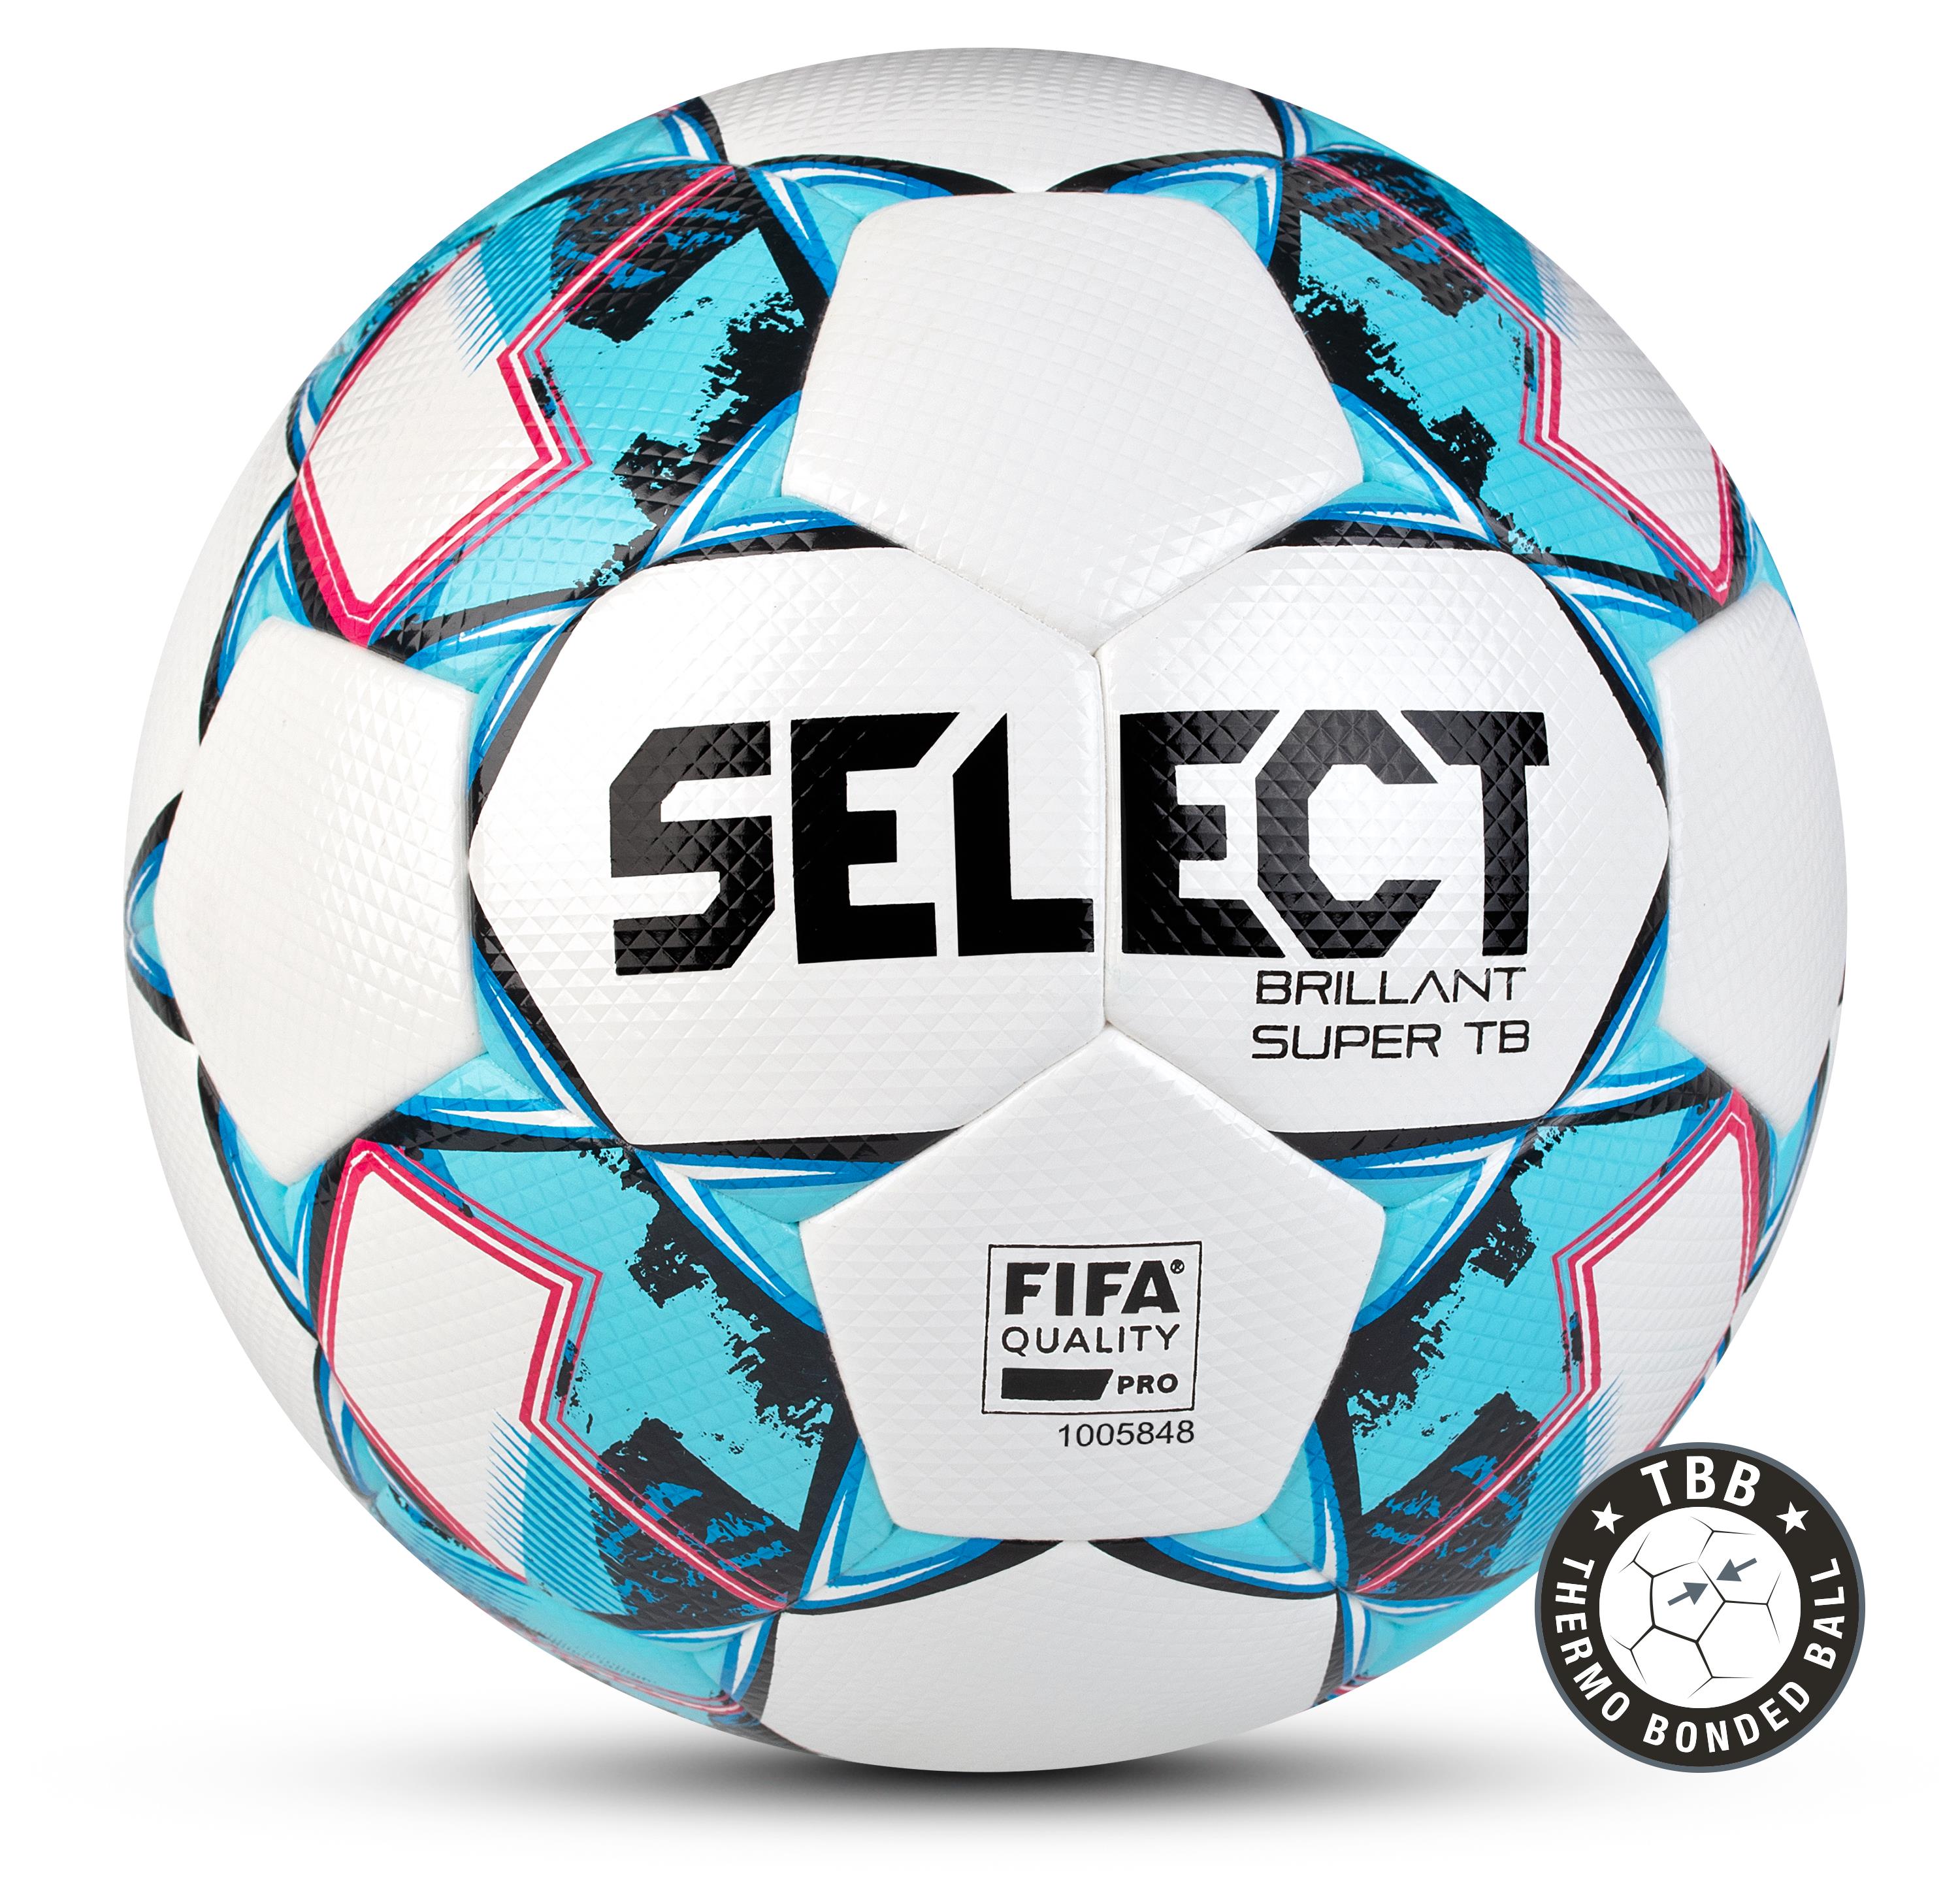 vloeistof Gepolijst Korea Select voetbal Brilliant Super Tb wit-blauw wedstrijdbal maat 4 en 5 –  Megavoetbalshop.com